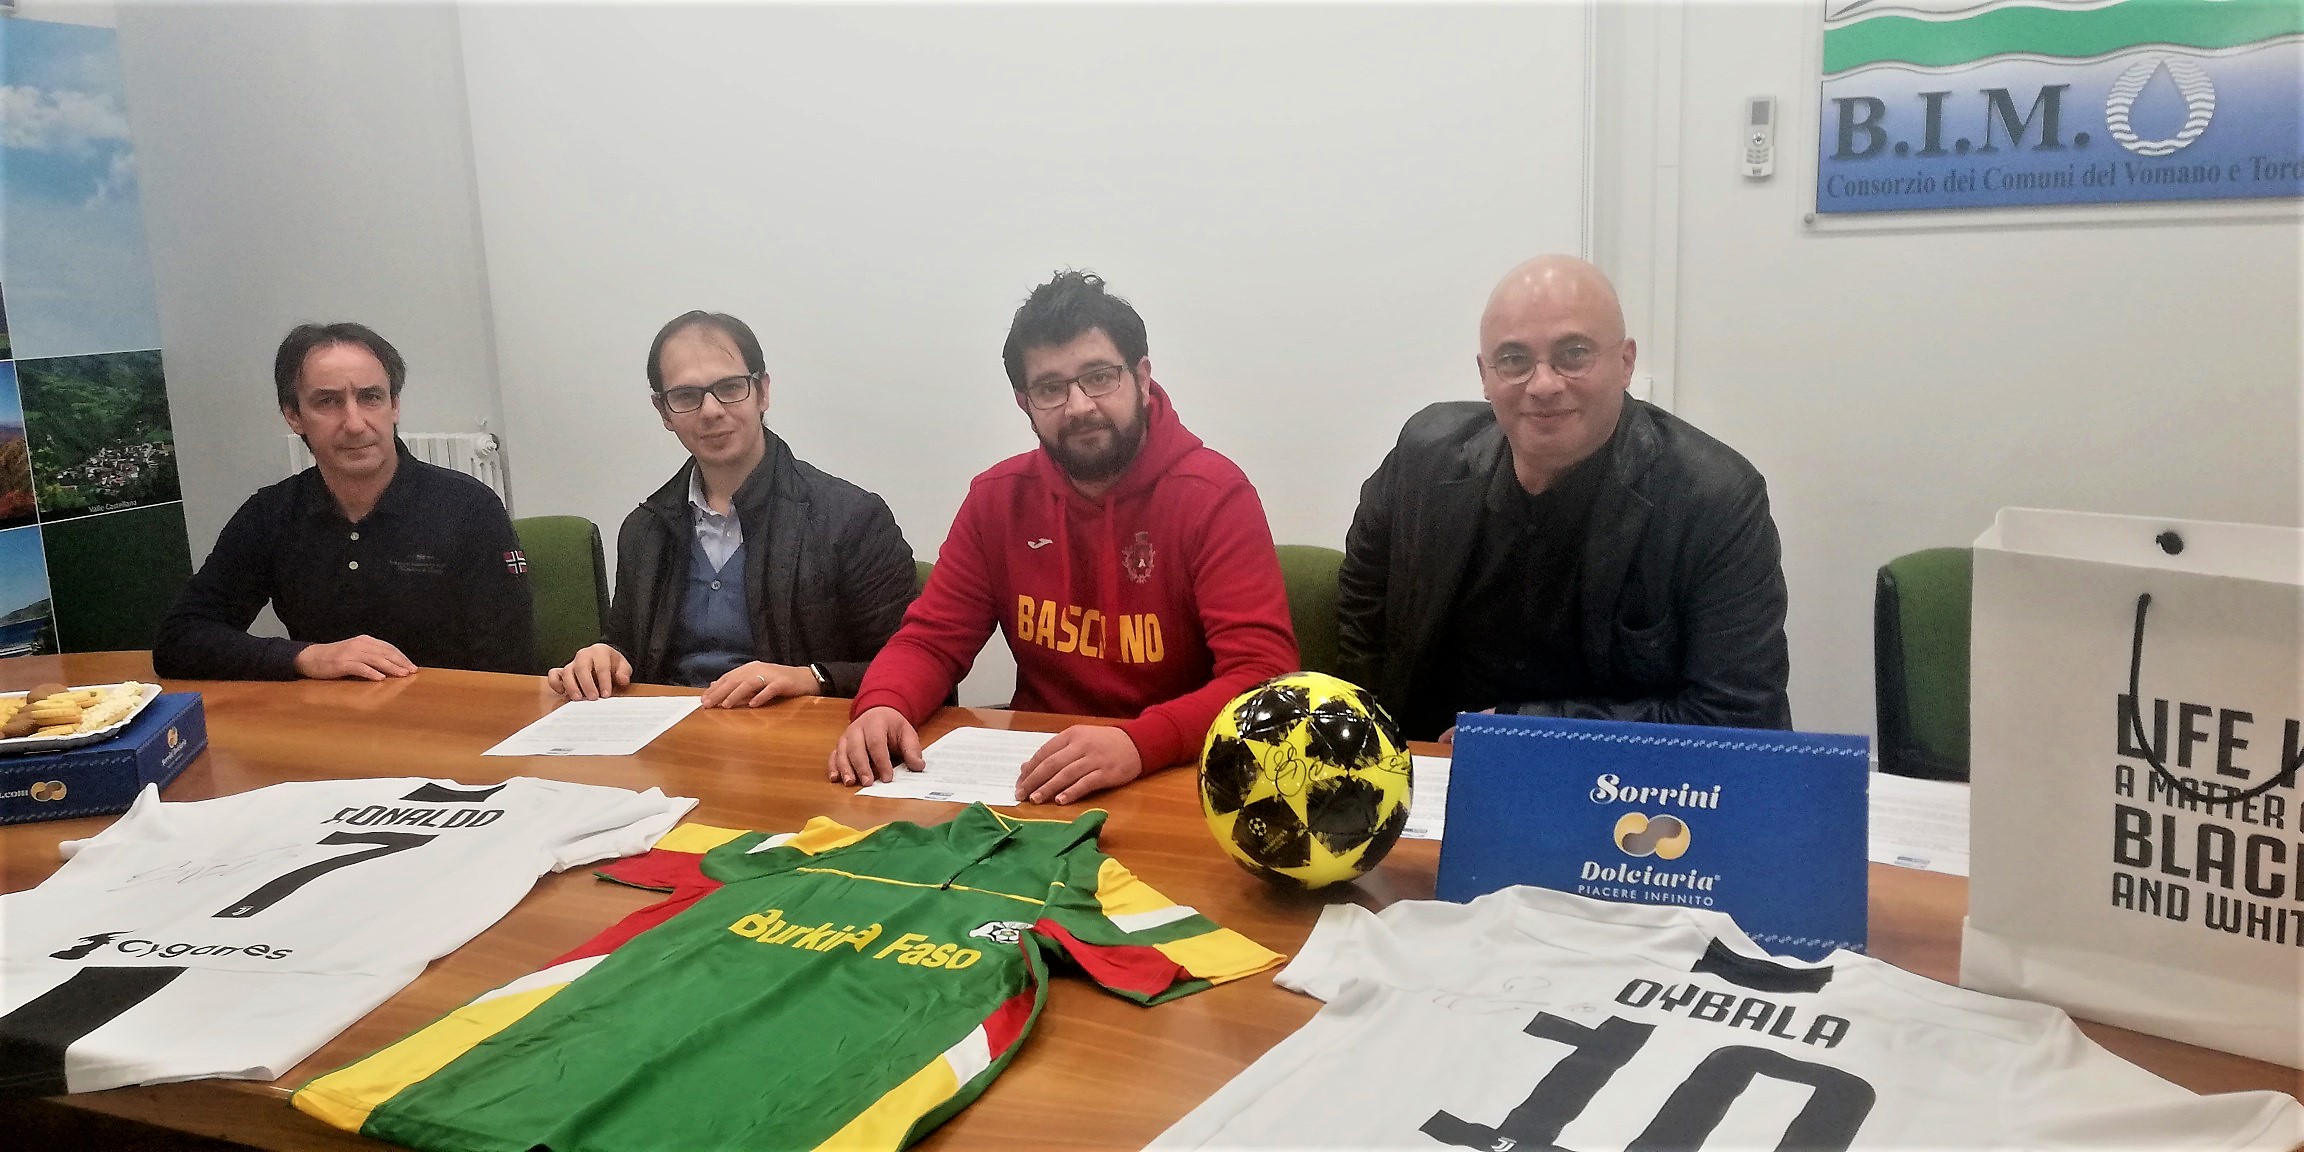 Basciano. Solidarietà per il “Burkina Faso” con i giocatori della Juventus. Madrina Aida Yespica